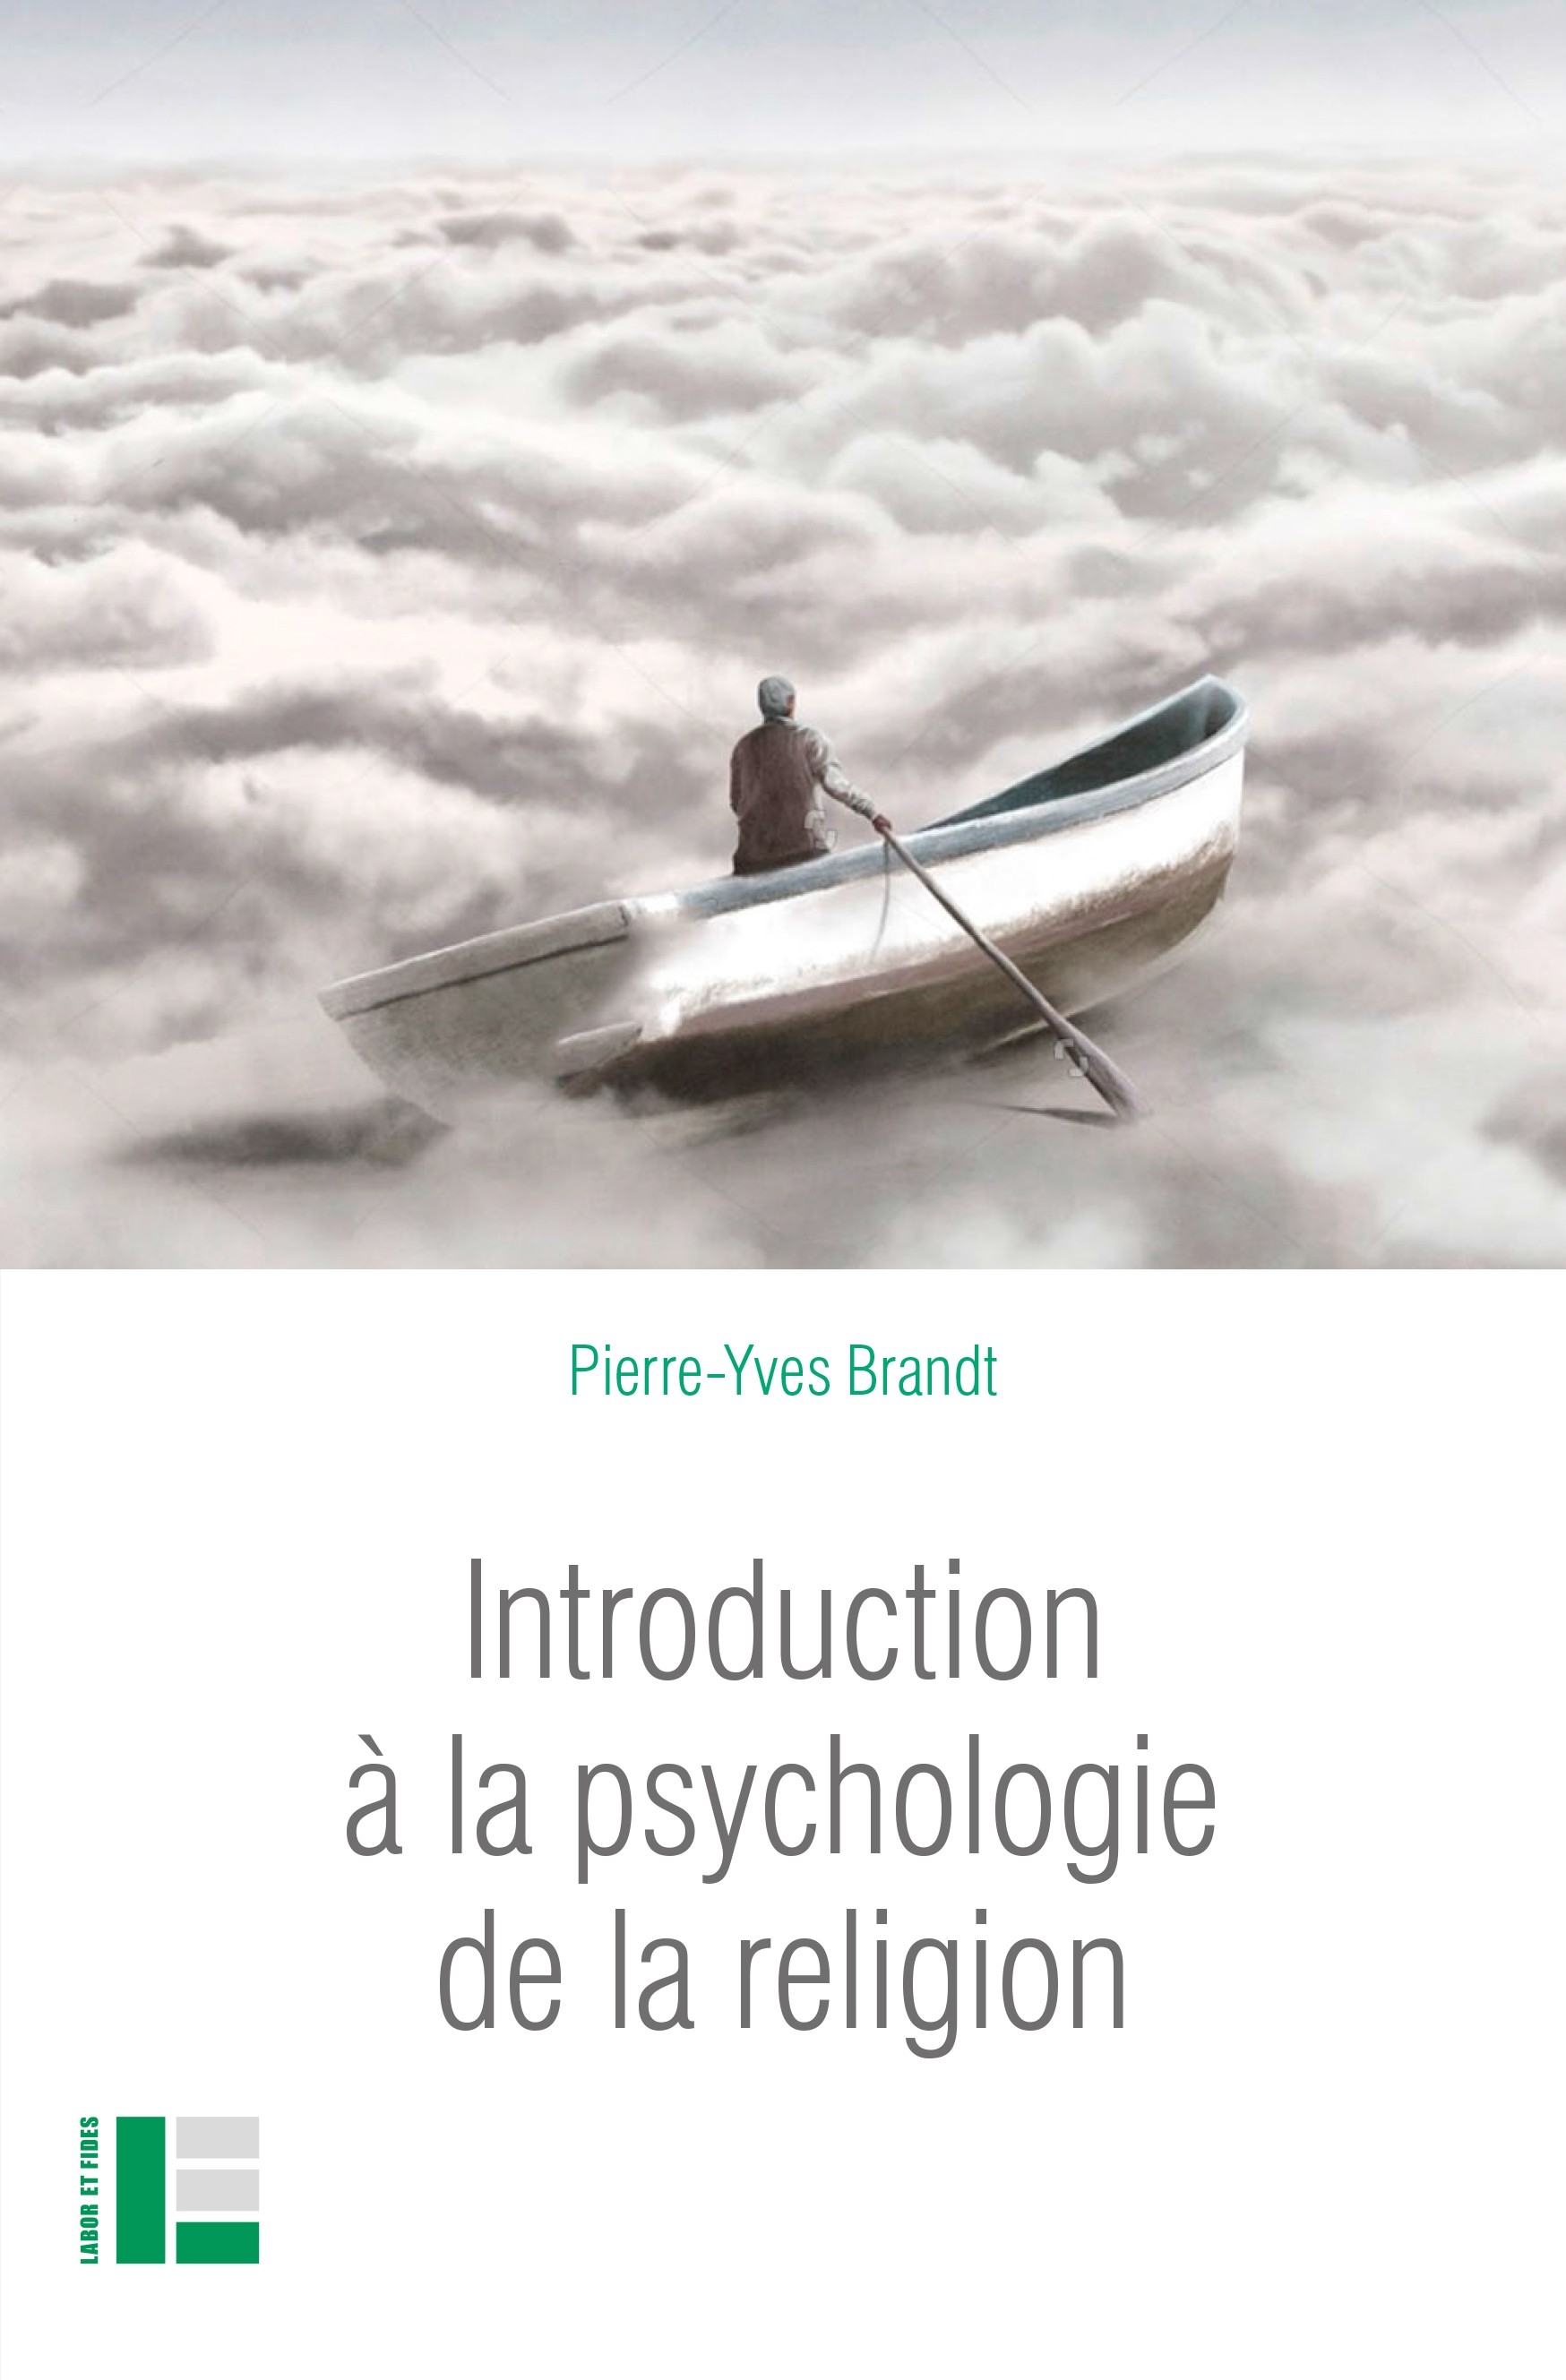 Introduction à la psychologie de la religion, P.-Y. Brandt, Labor et Fides